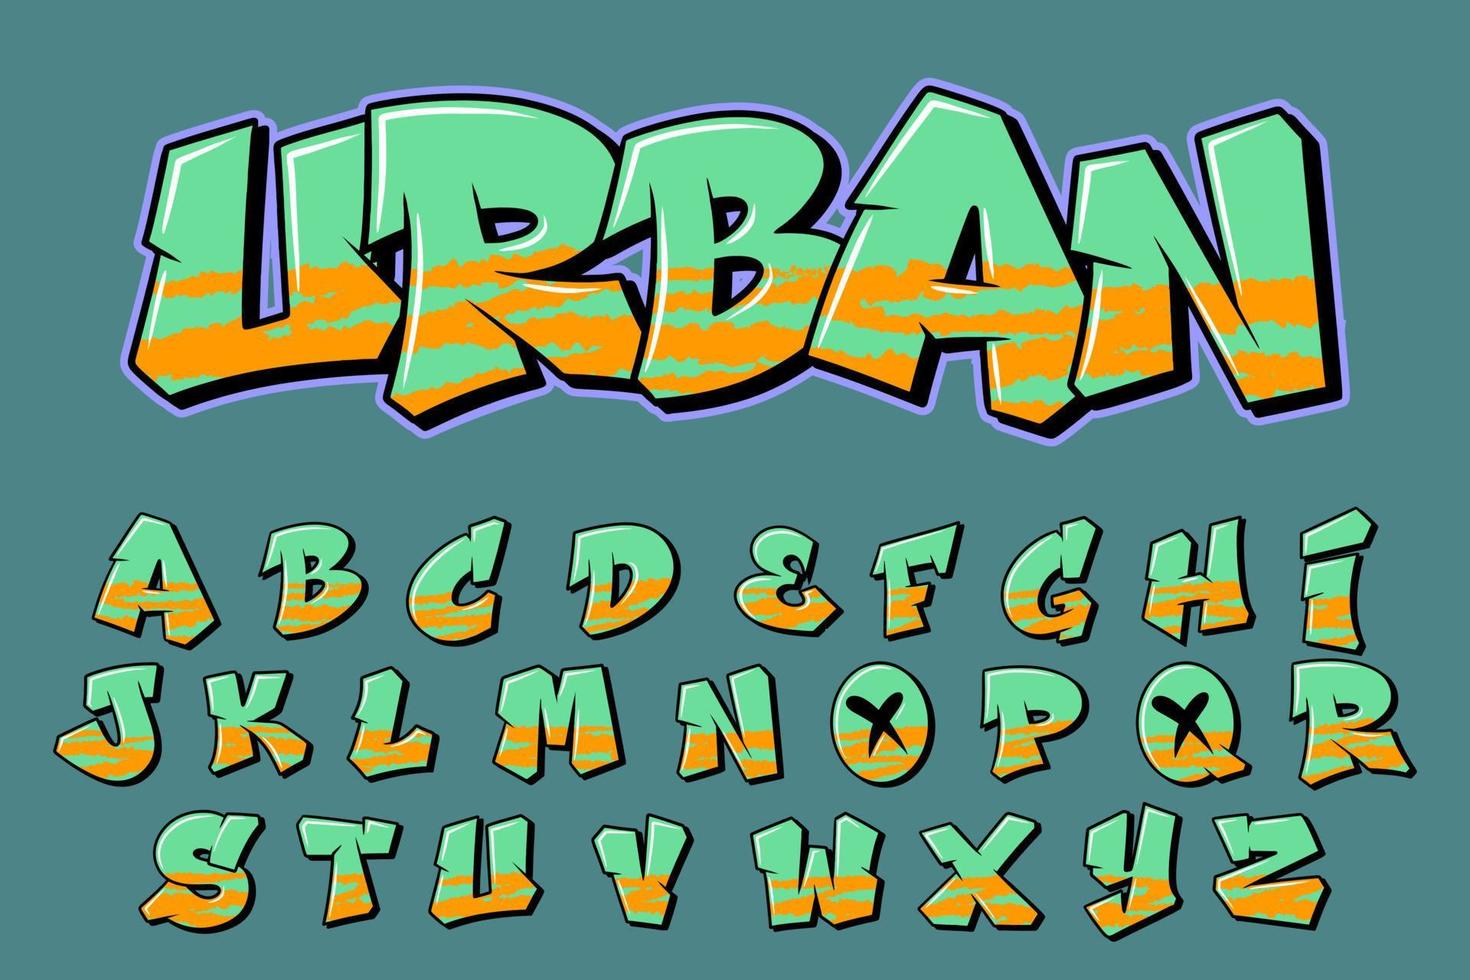 urbano strada alfabeto graffiti testo vettore lettere